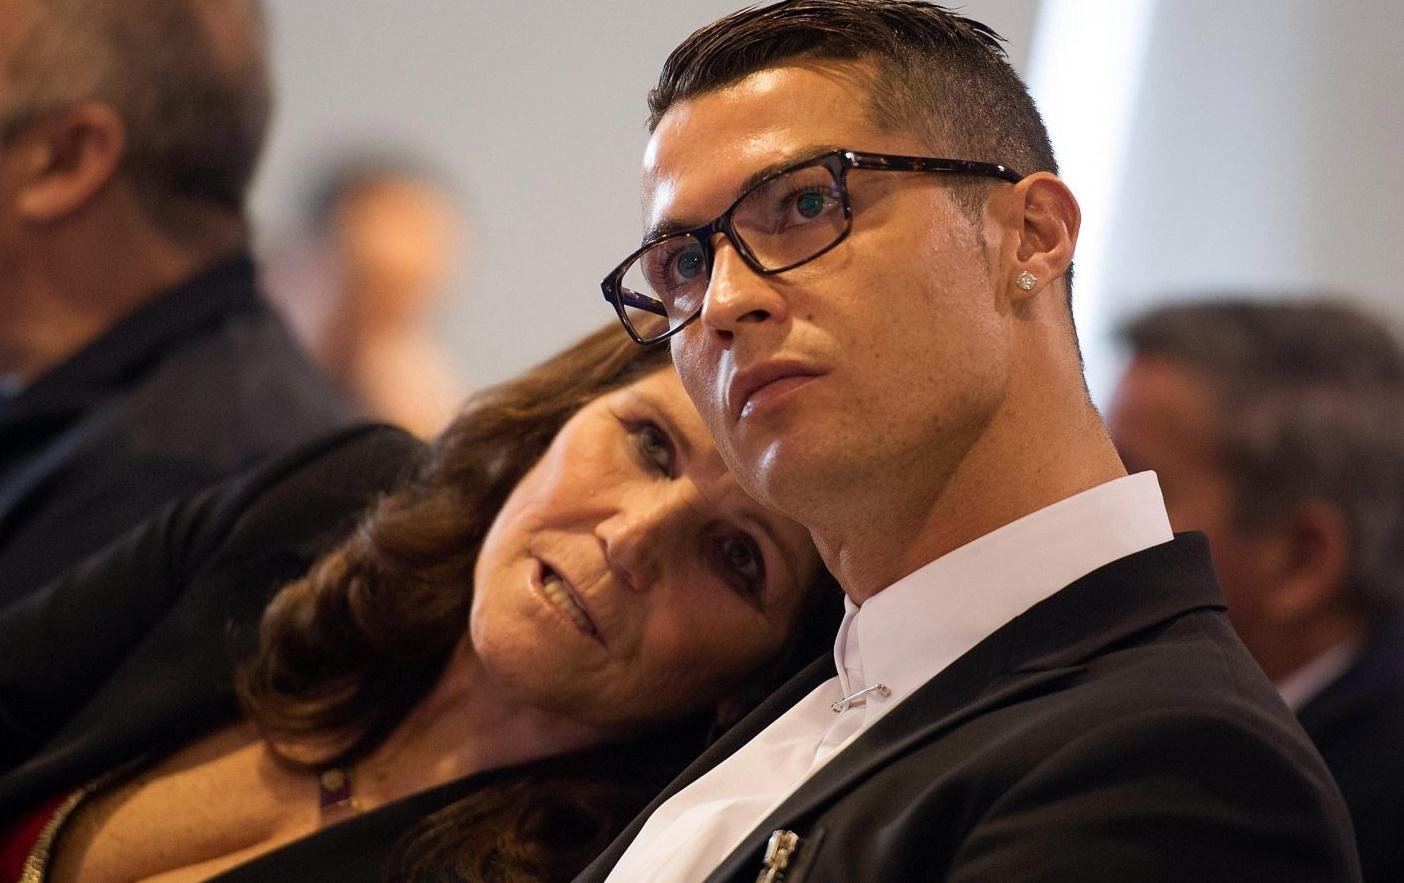 Câu chuyện xúc động phía sau giọt nước mắt của mẹ Ronaldo